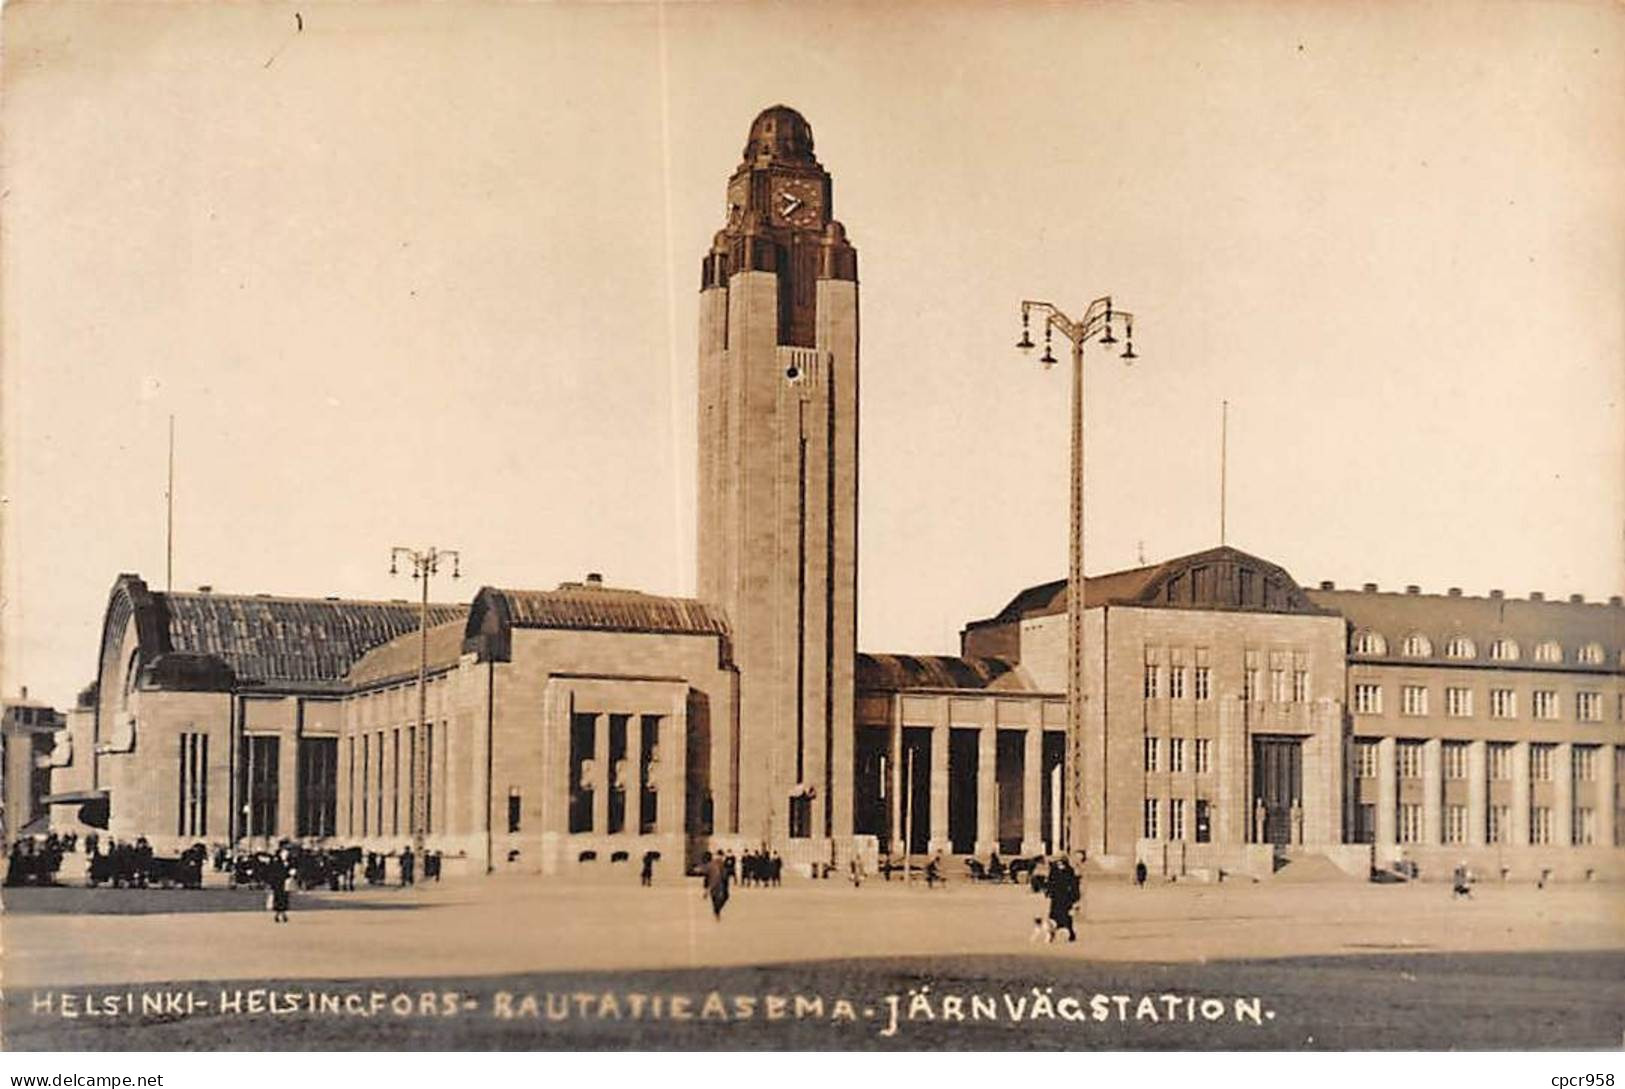 FINLAND - HELSINKI - SAN39276 - Helsingfors - Rautatieasema - Järnvägstation - Finland